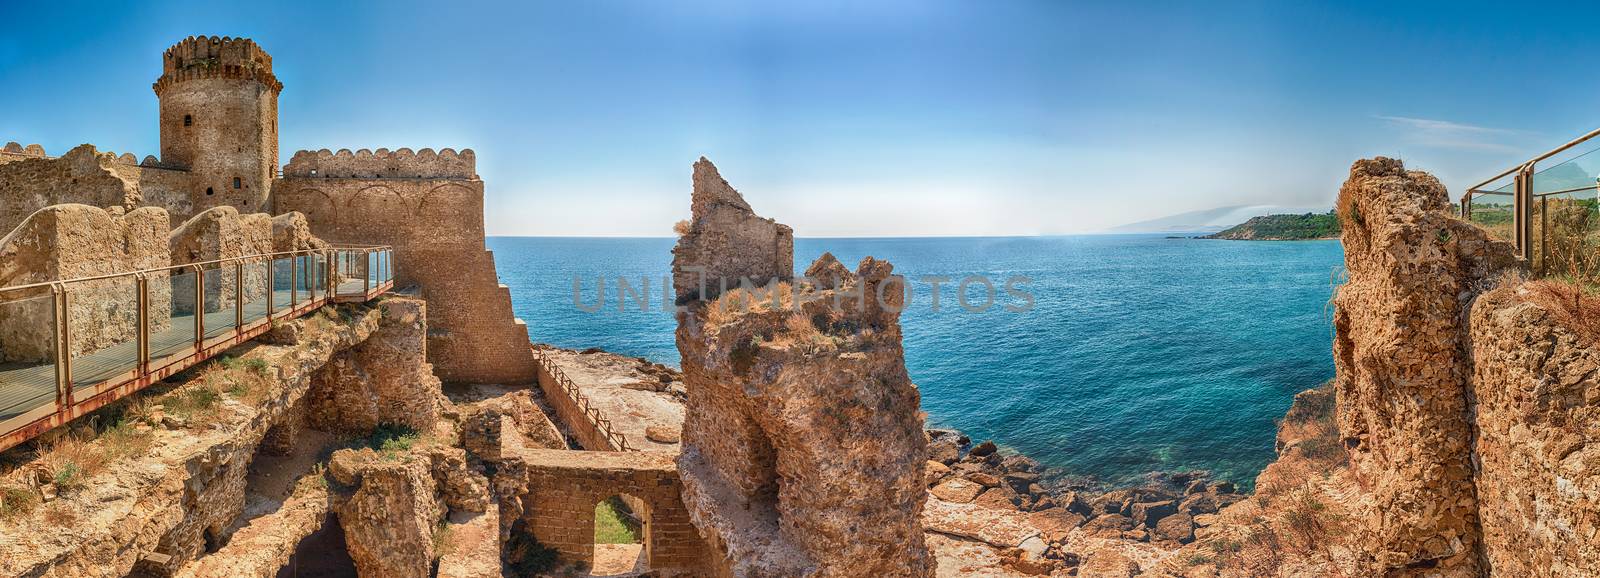 View of the Aragonese Castle, Isola di Capo Rizzuto, Italy by marcorubino